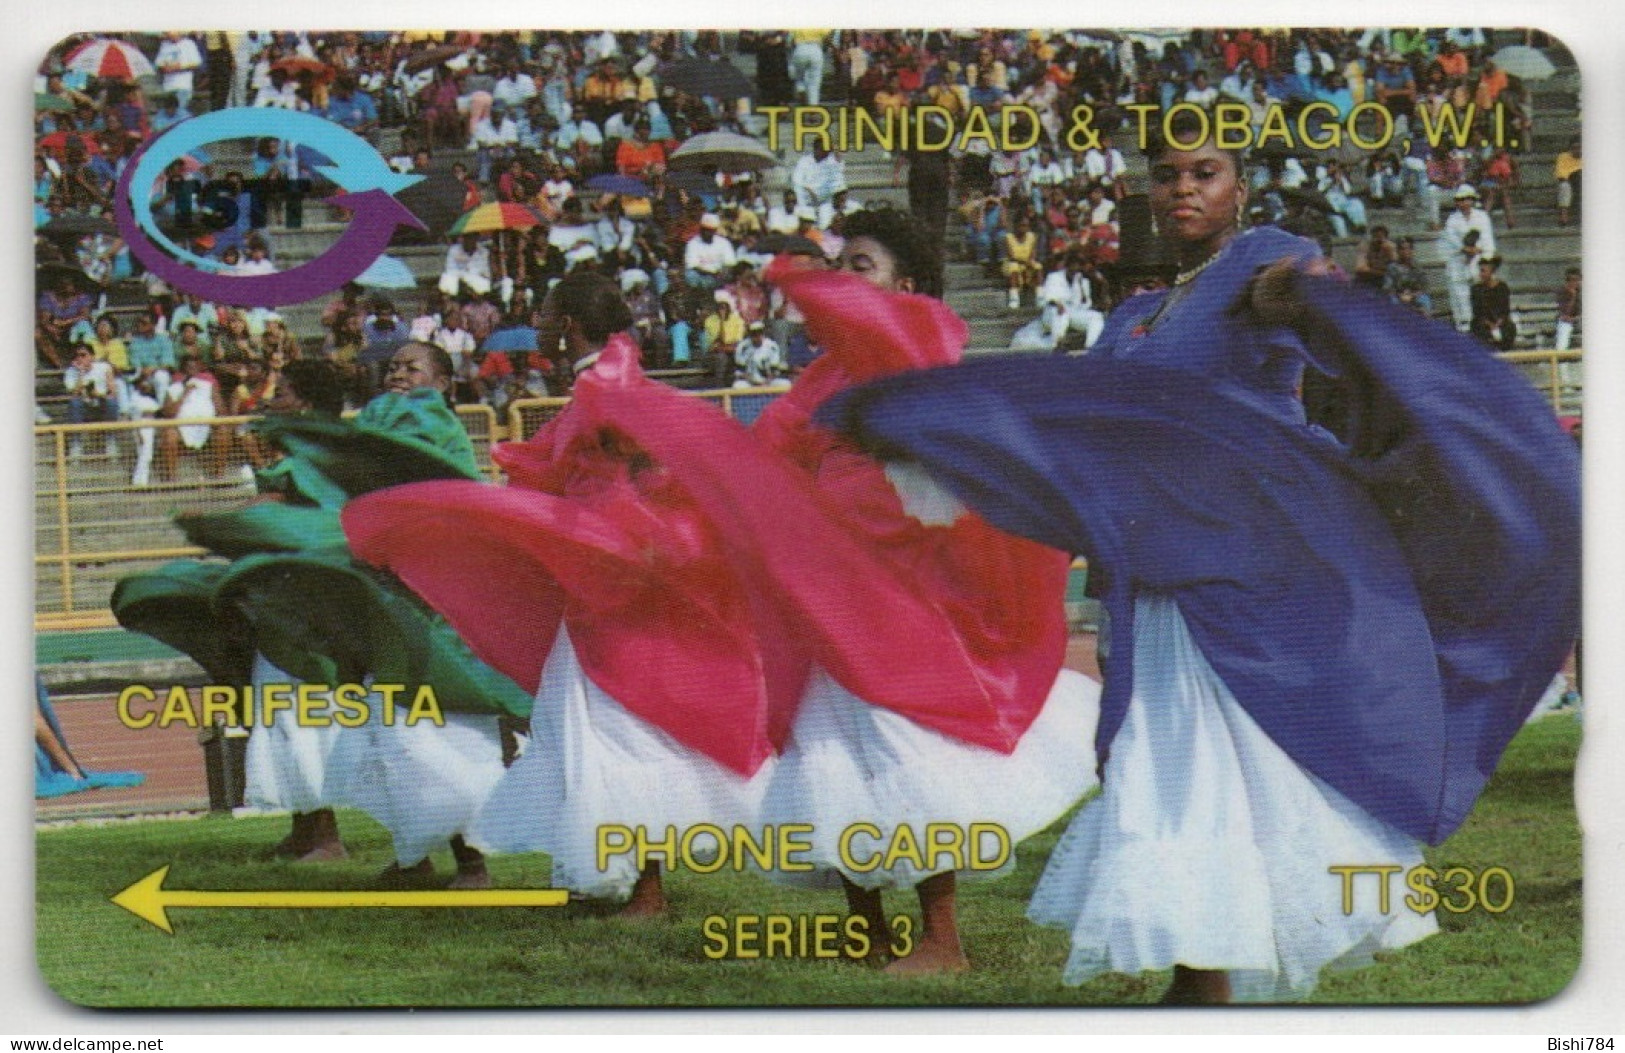 Trinidad & Tobago - CARIFESTA - 10CTTA - Trinidad & Tobago